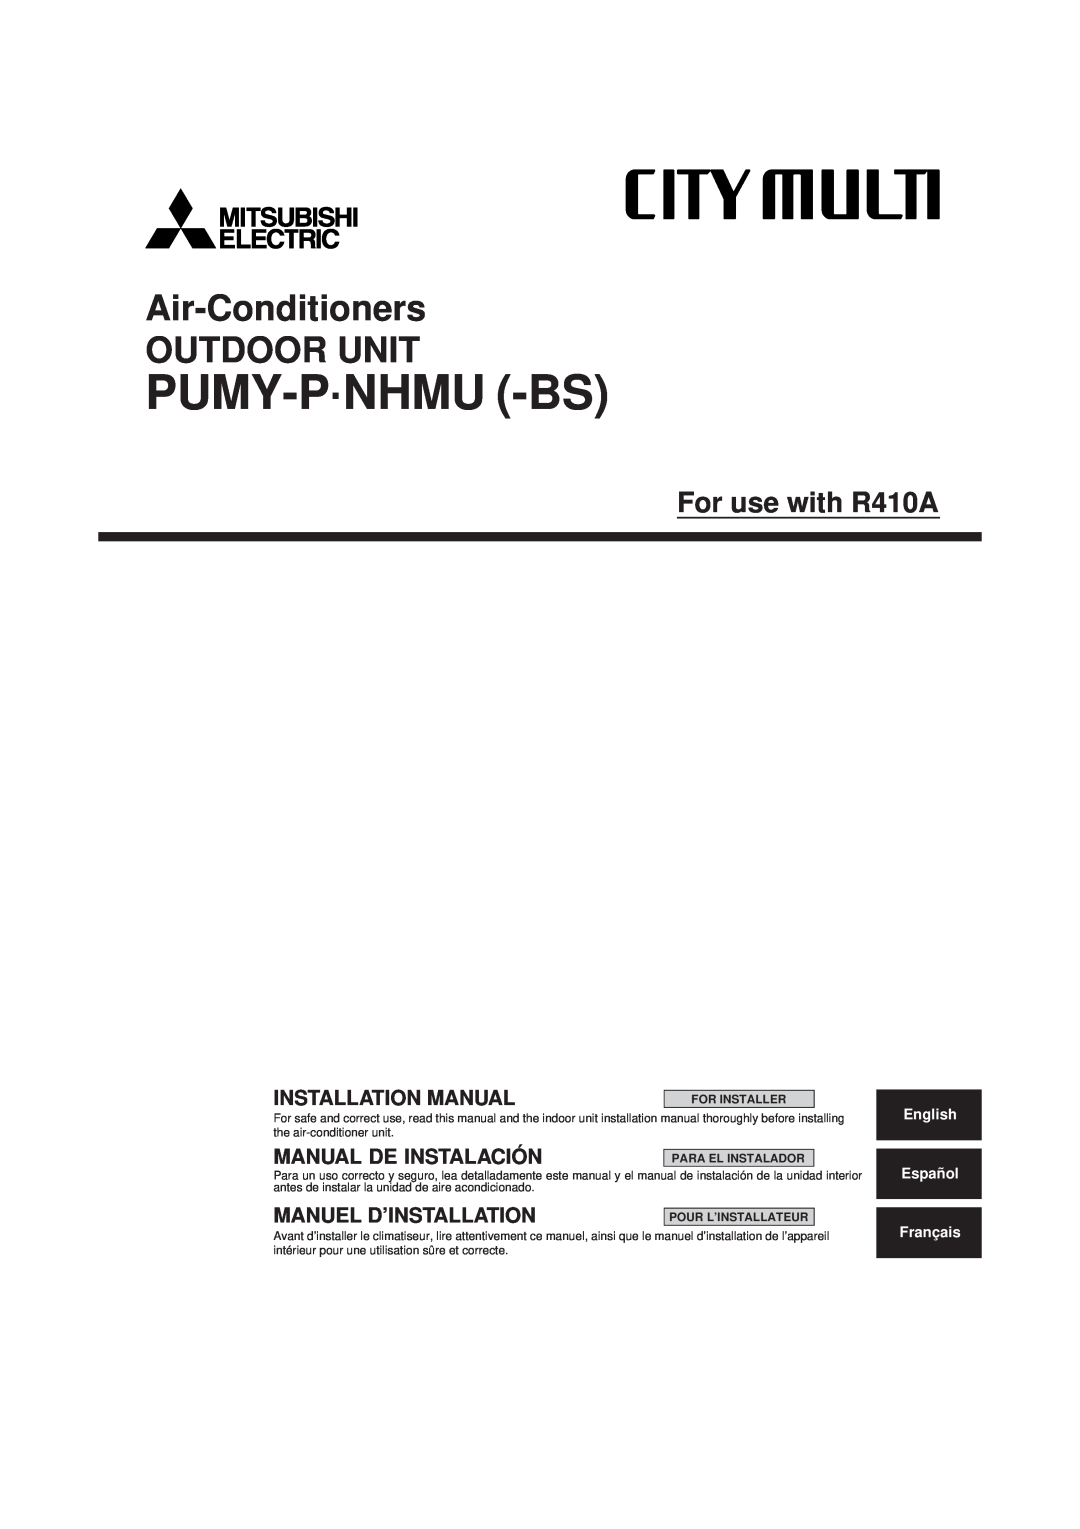 Mitsubishi Electronics R410A installation manual For Installer, Para El Instalador, Pour L’Installateur, Pumy-P·Nhmu -Bs 